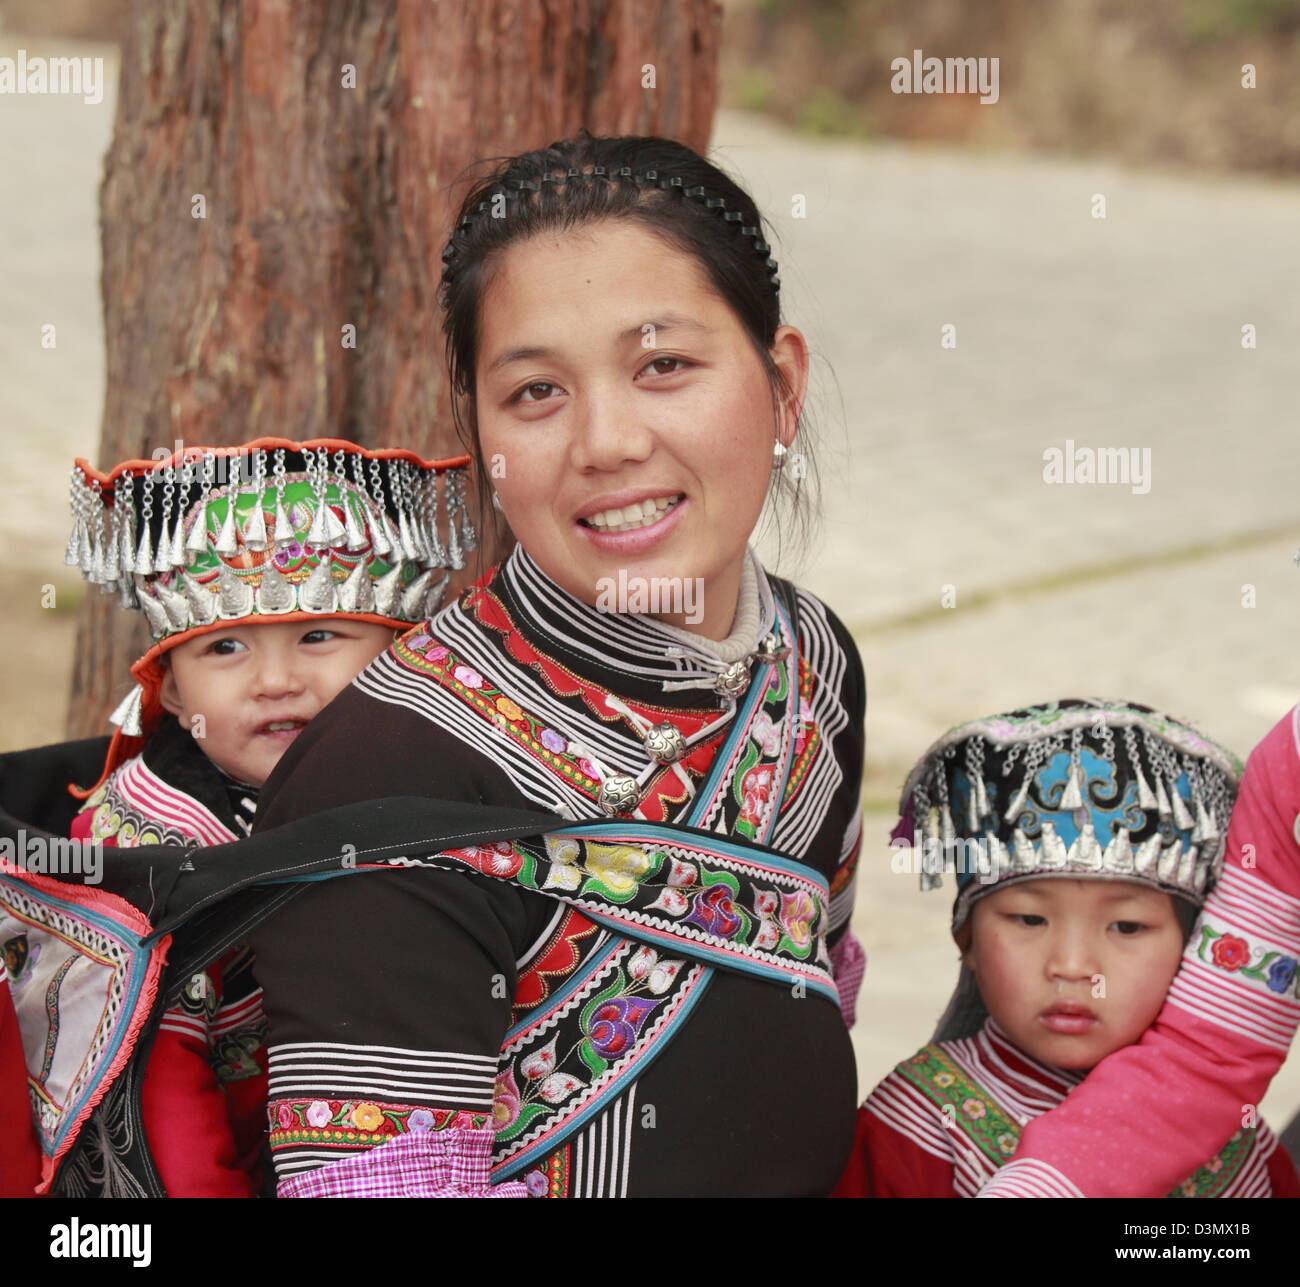 China, Yunnan, Yuanyang, Hani ethnic minority people, Stock Photo